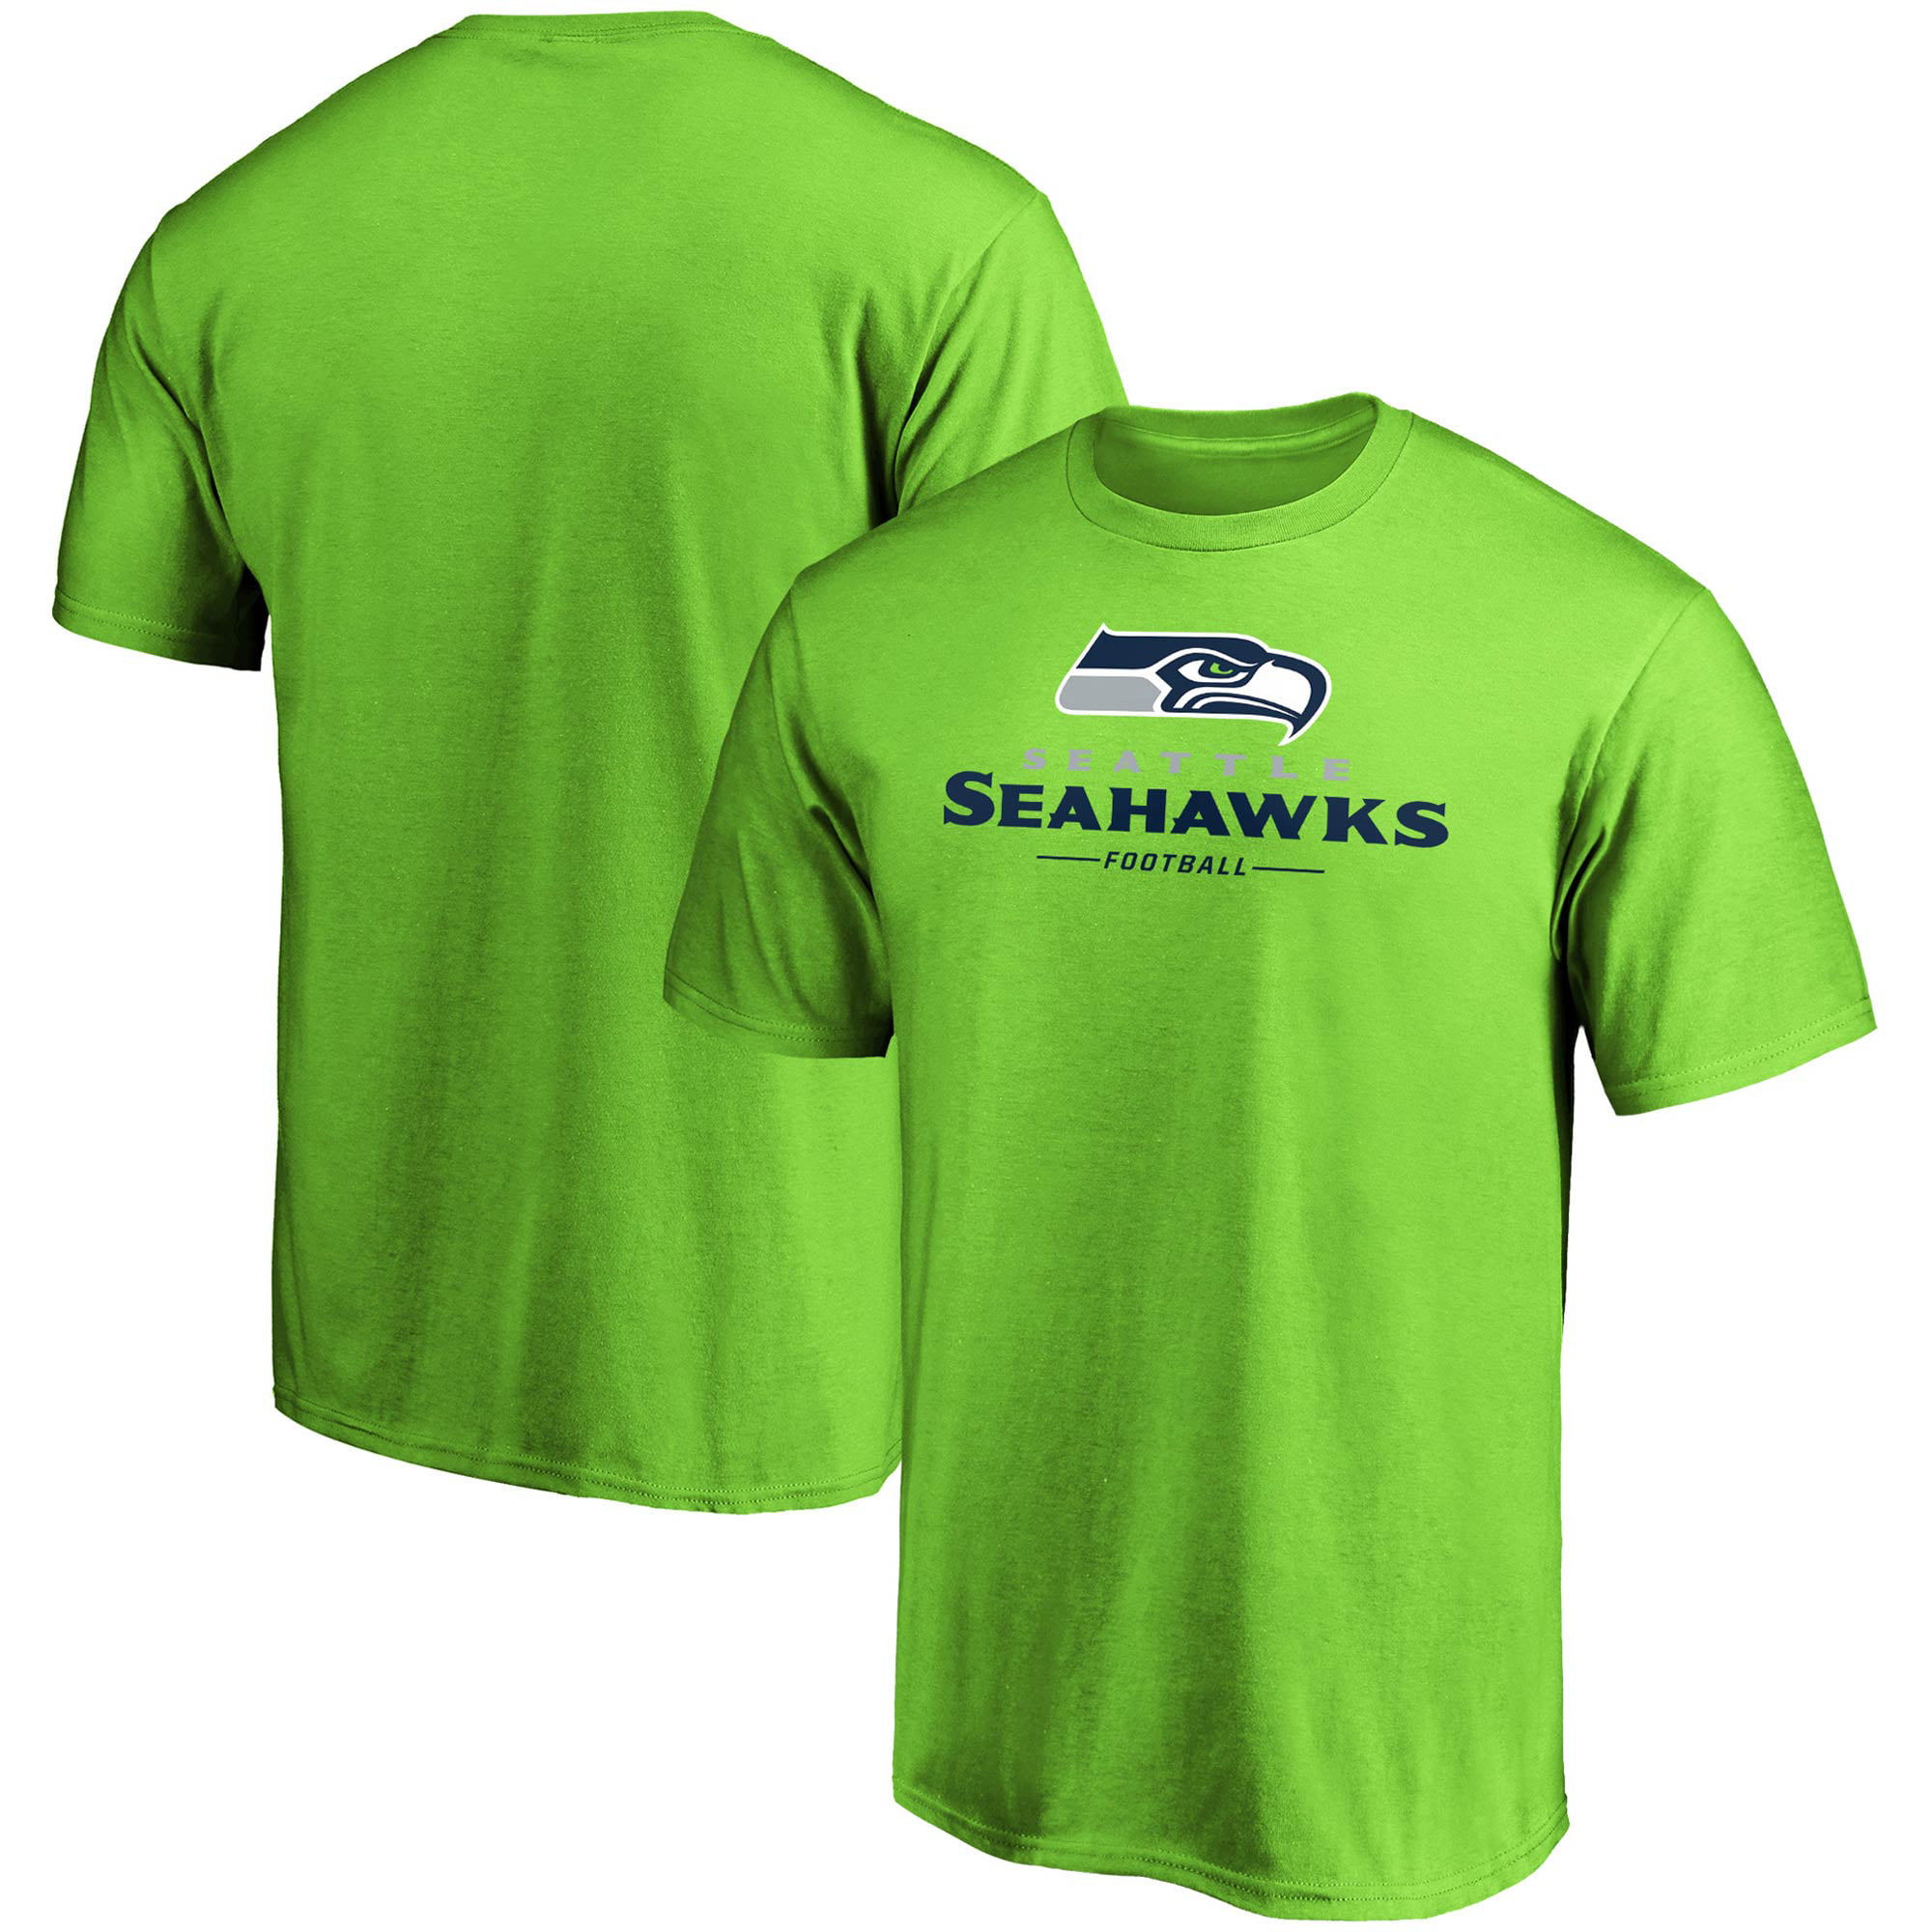 5t seahawks shirt